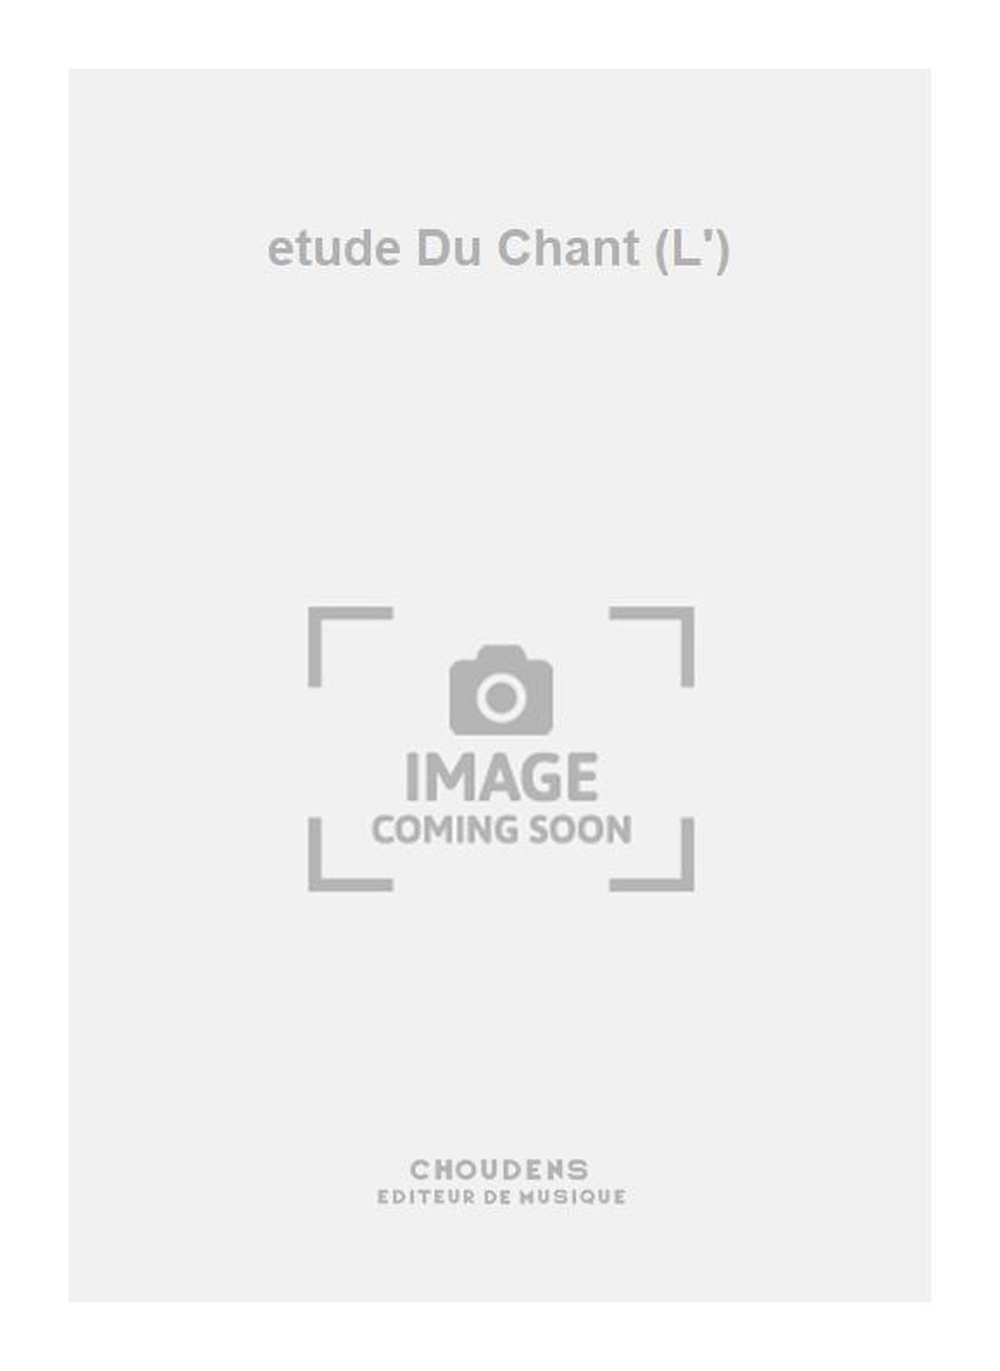 Mansion: etude Du Chant (L')